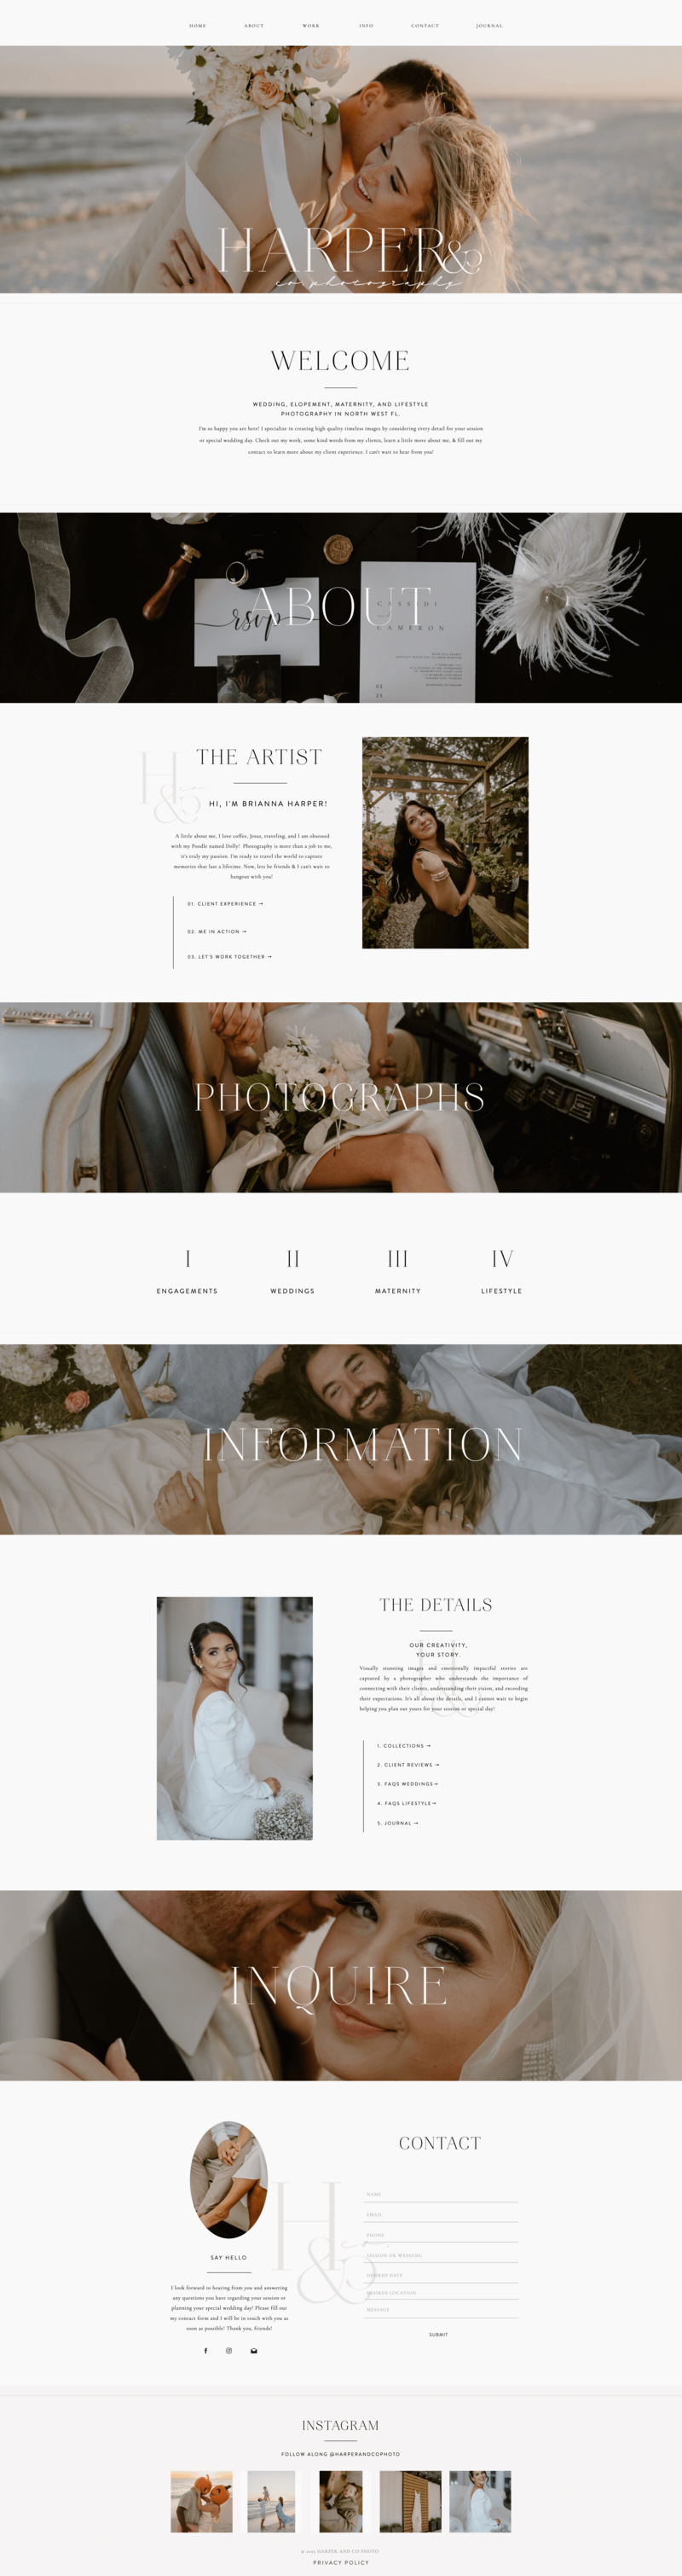 Screenshot of a wedding photography website